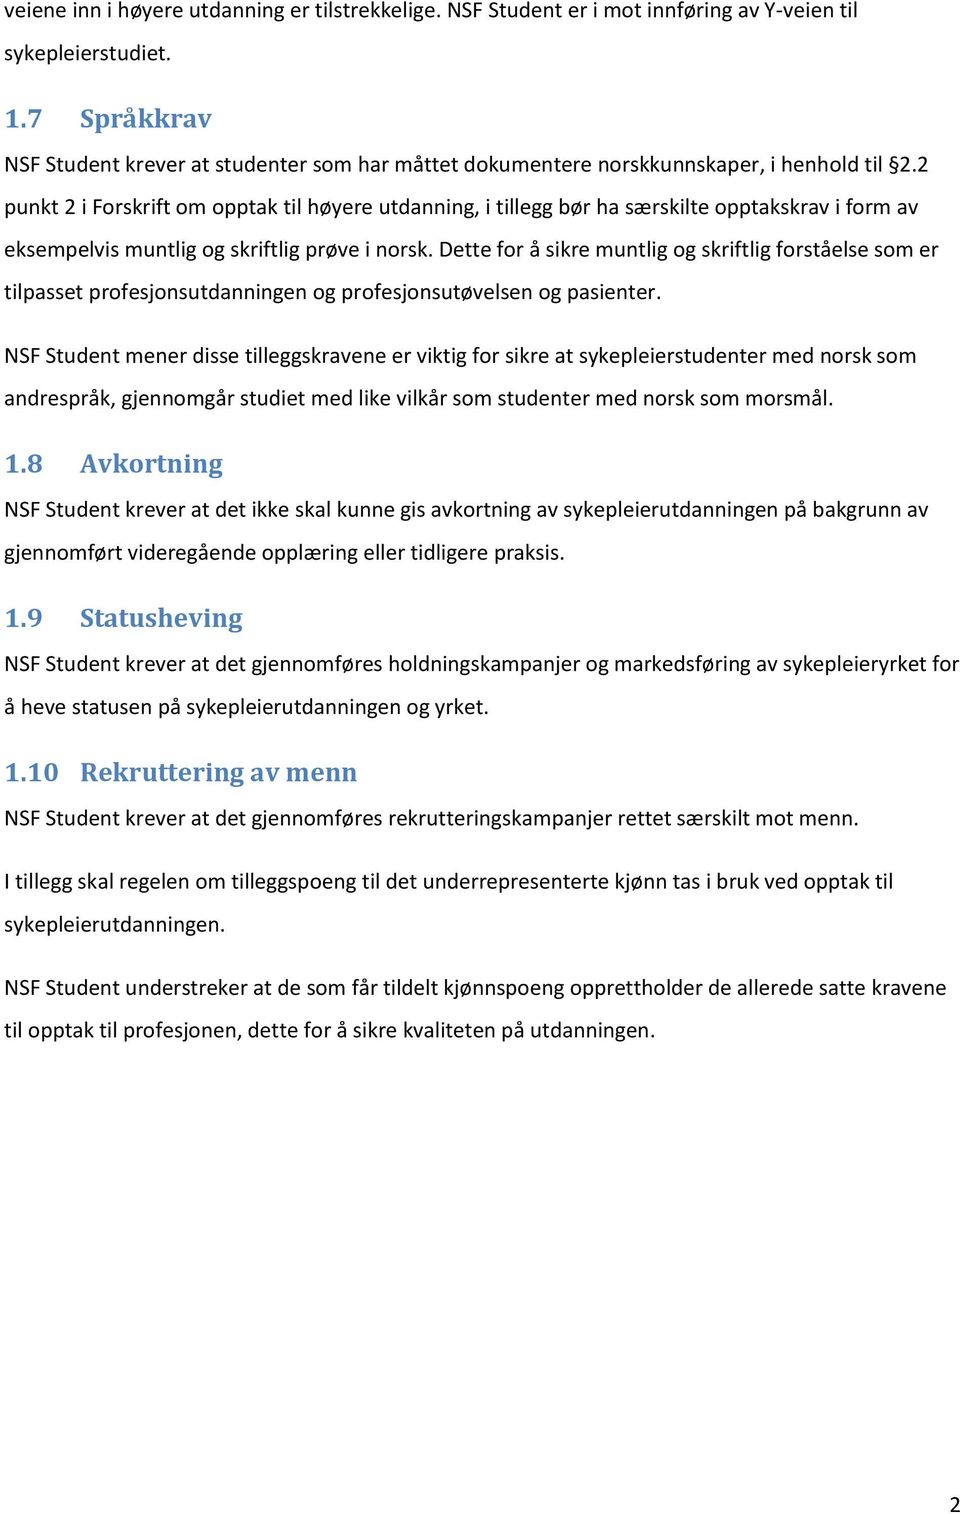 2 punkt 2 i Forskrift om opptak til høyere utdanning, i tillegg bør ha særskilte opptakskrav i form av eksempelvis muntlig og skriftlig prøve i norsk.